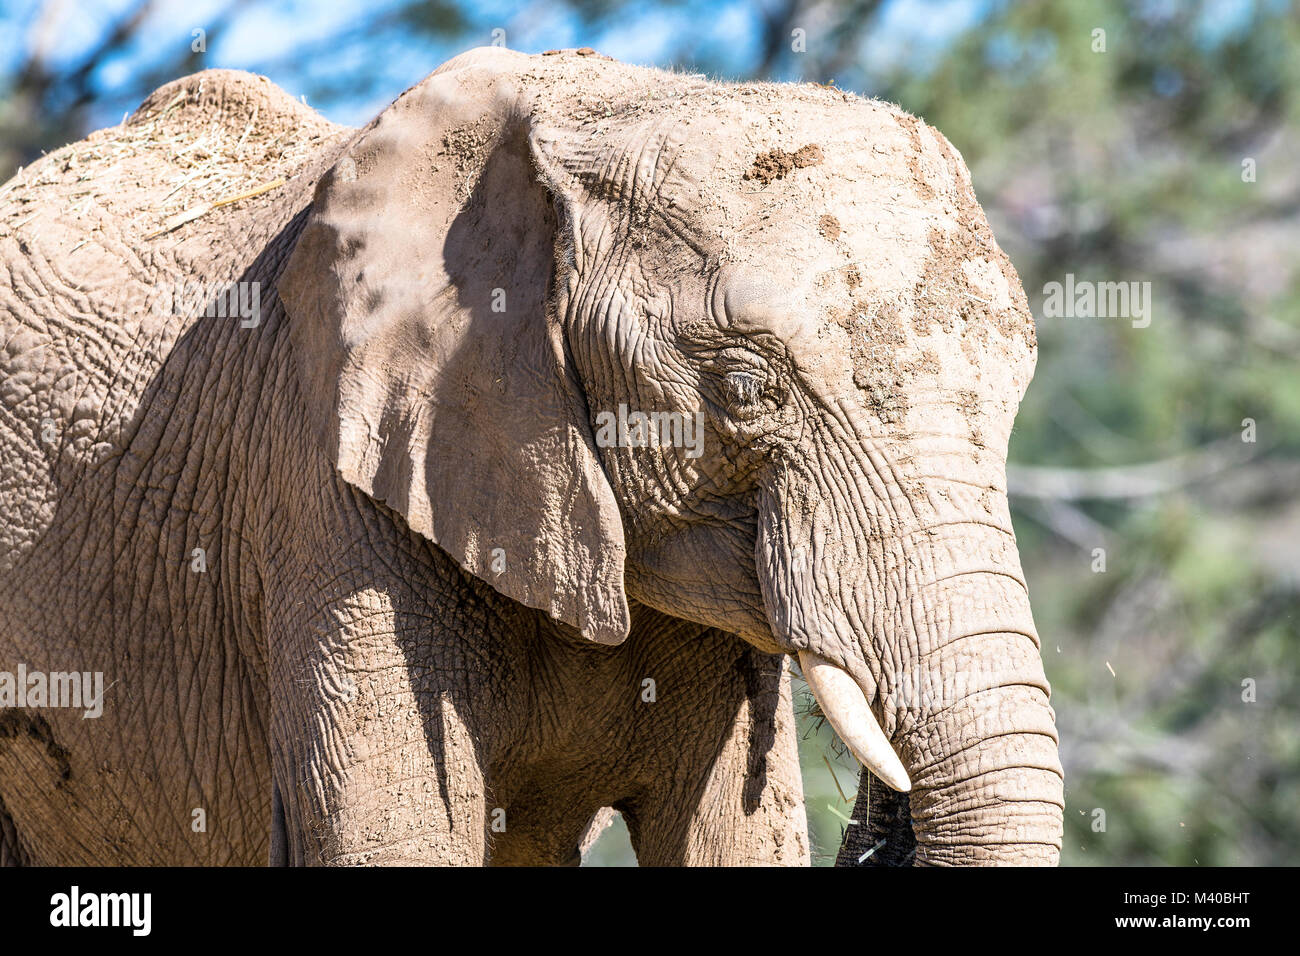 Eine große wilde Elefanten, die in der heißen Sonne ist in Schlamm bedeckt, um ihm zu helfen, Keep Cool Stockfoto